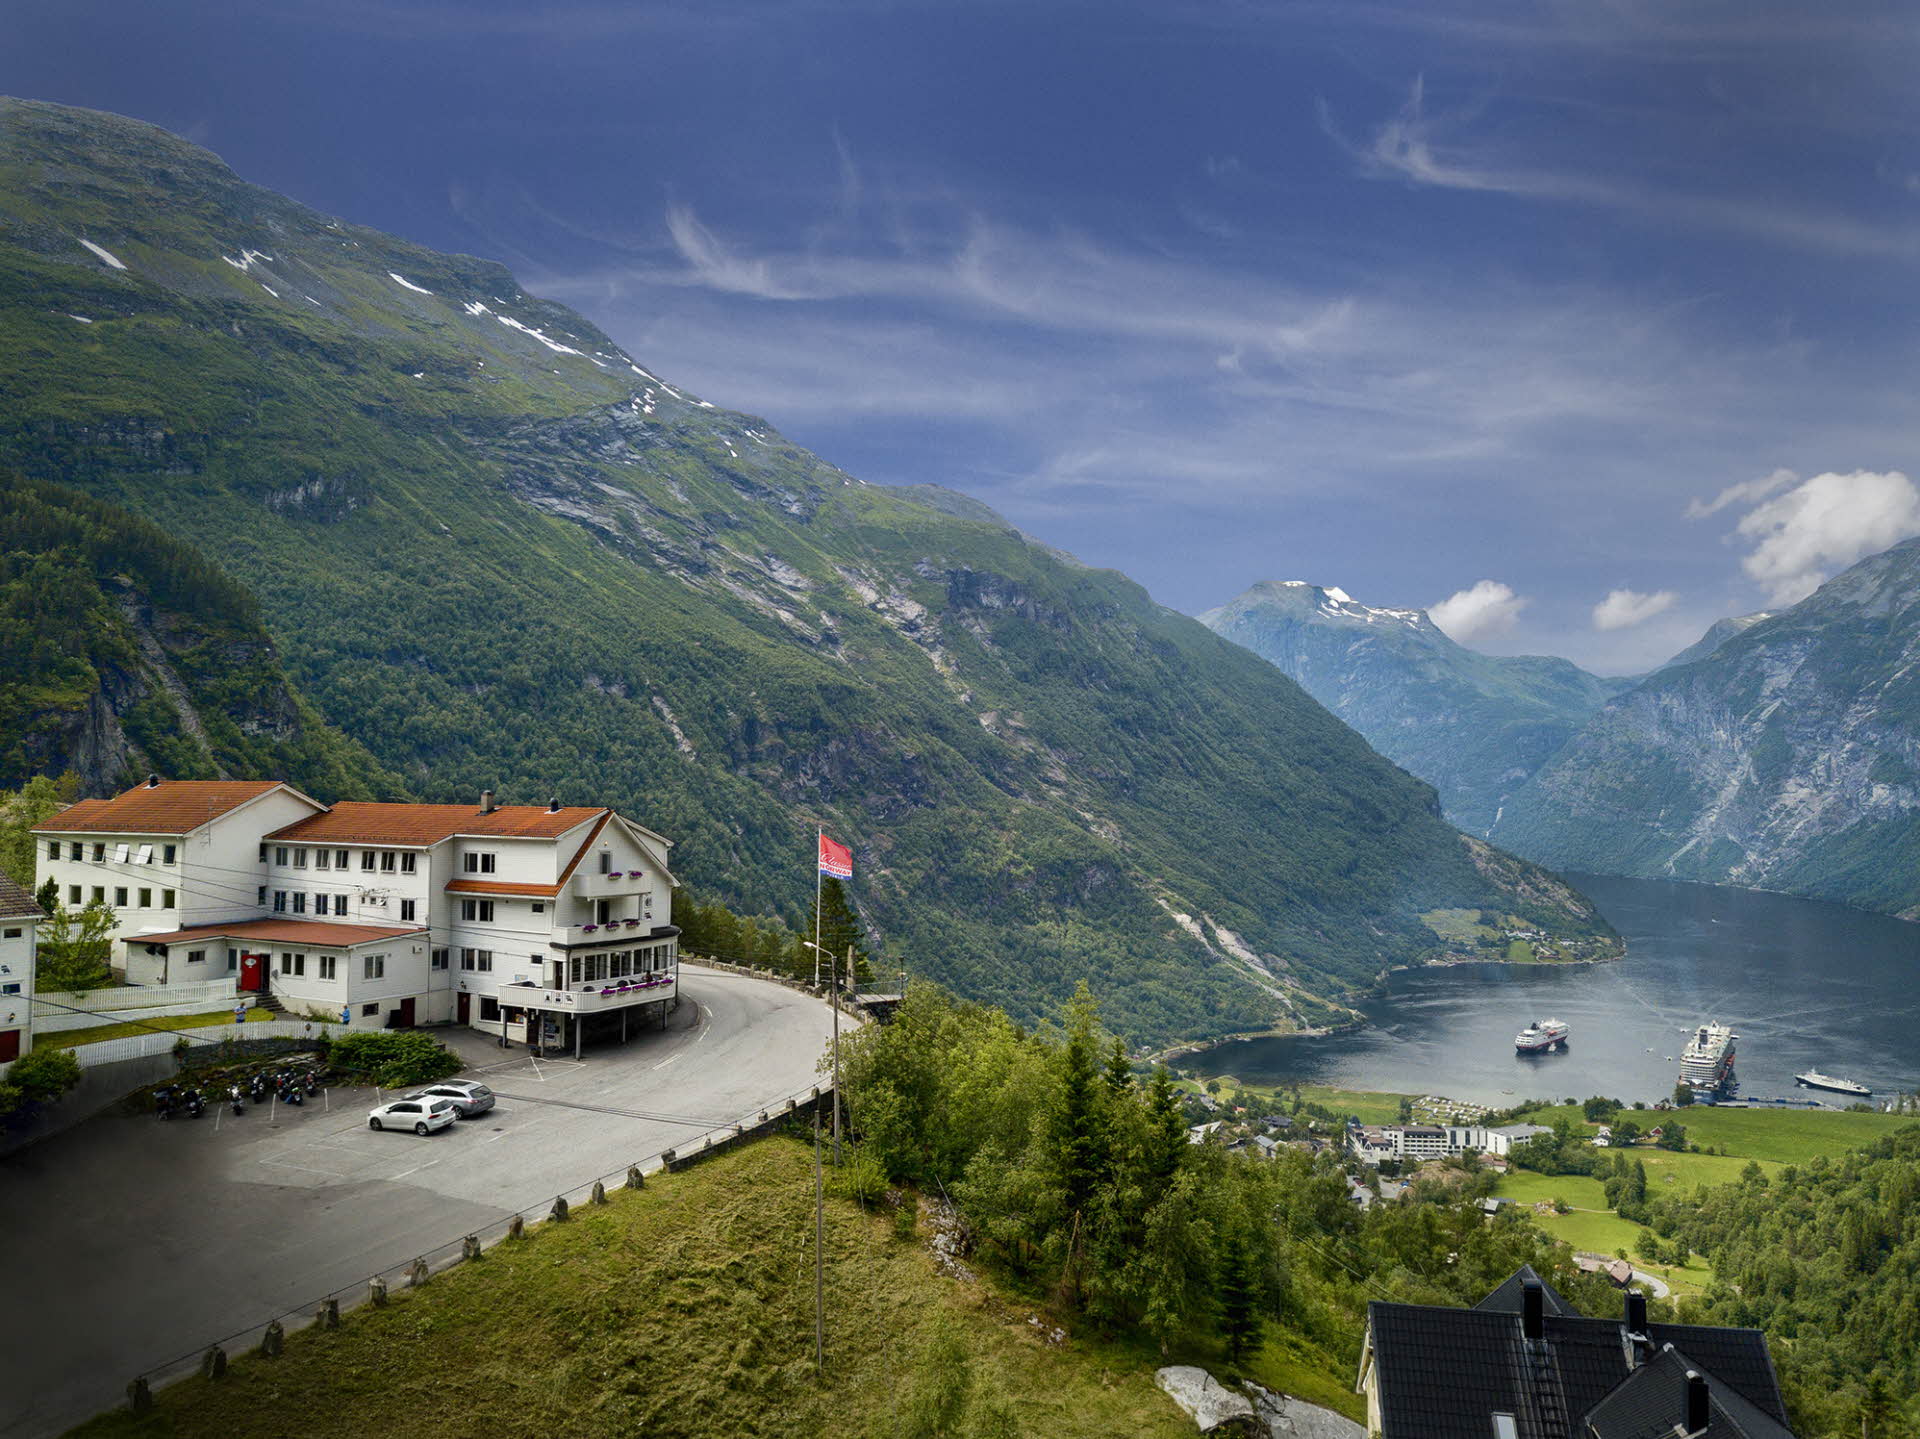 Hôtel à Geirnager à flanc de montagne, fjord avec 3 bateaux de croisière en contrebas en été